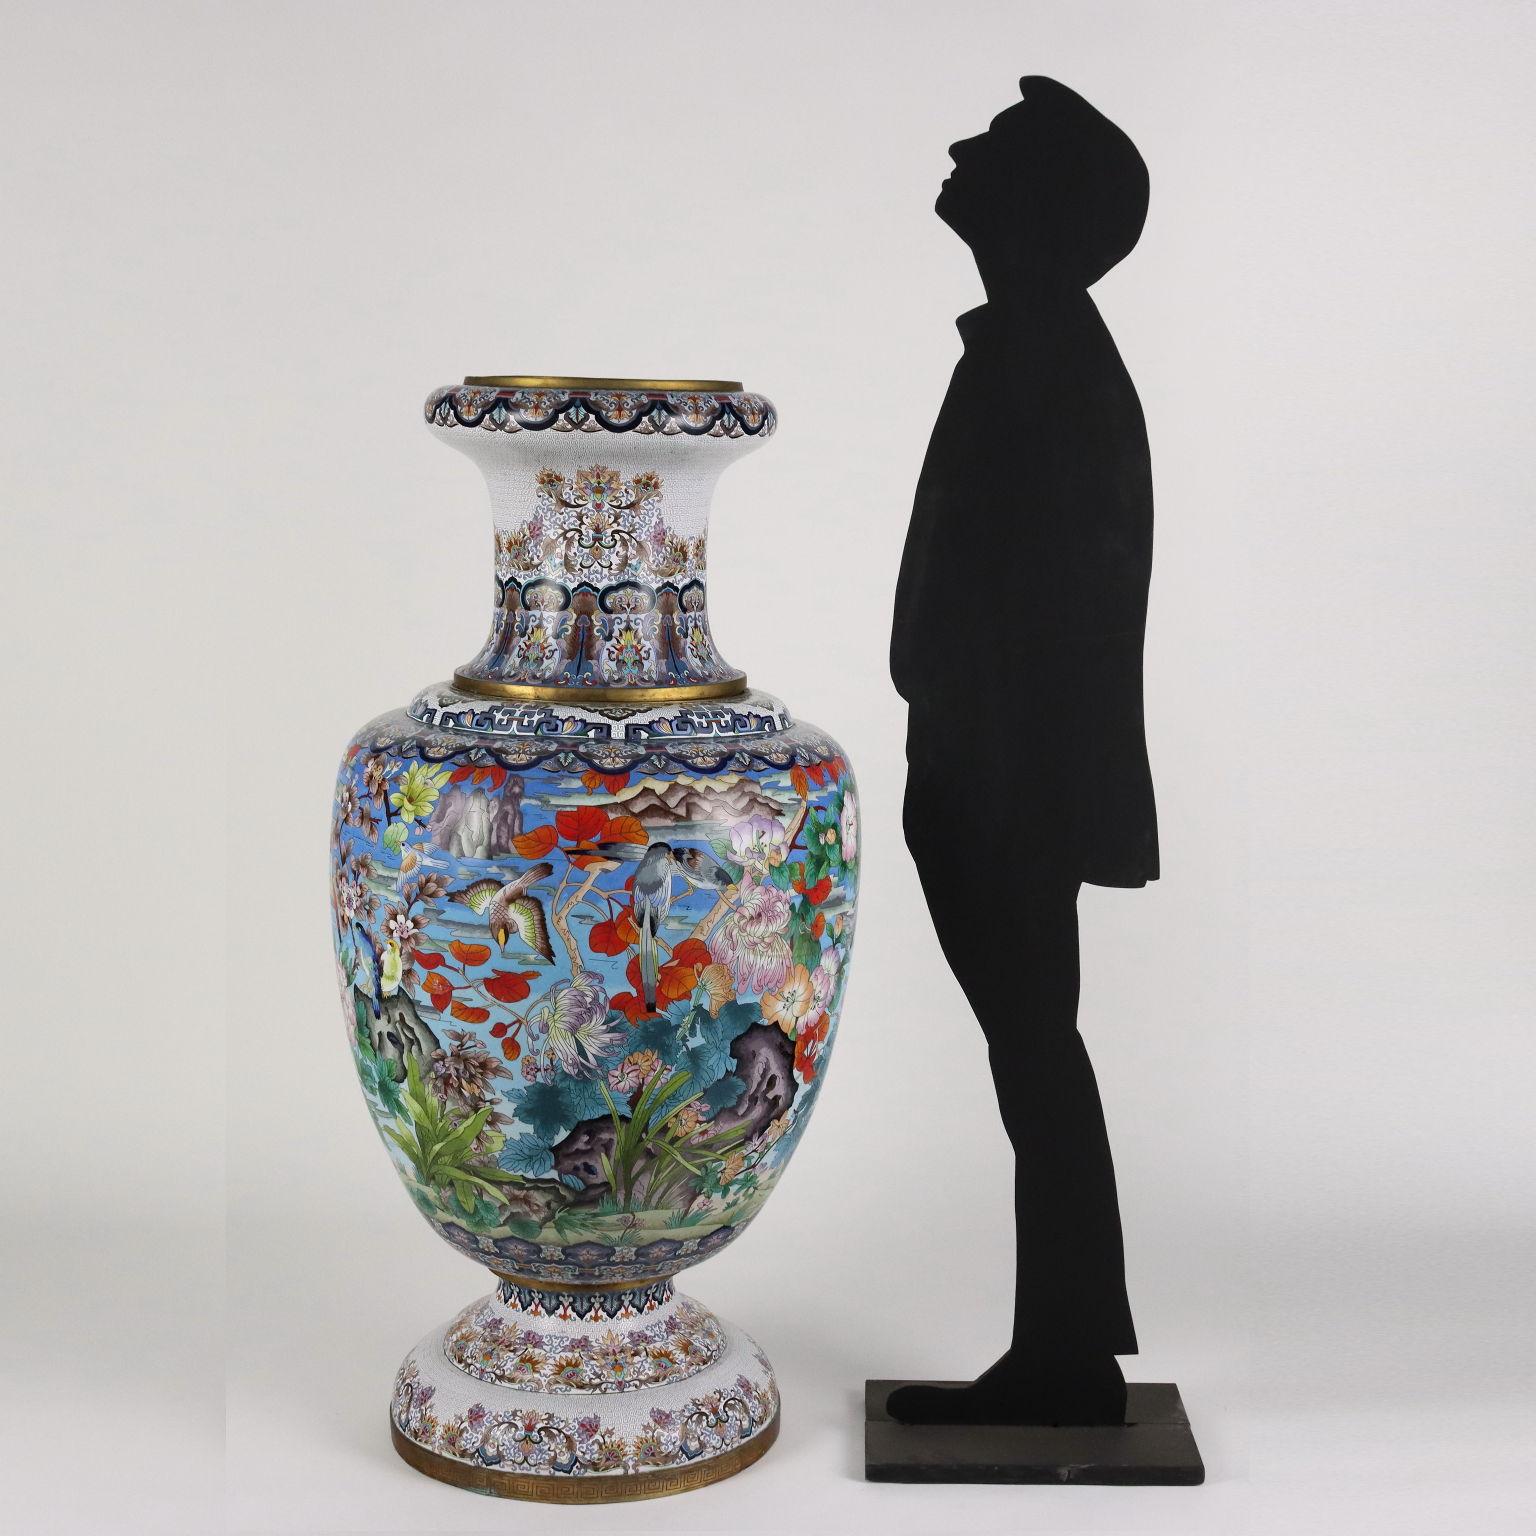 Grande vaso in bronzo decorato a cloisonné con smalti colorati, a rappresentare paesaggi, volatili e fiori di gusto orientale.